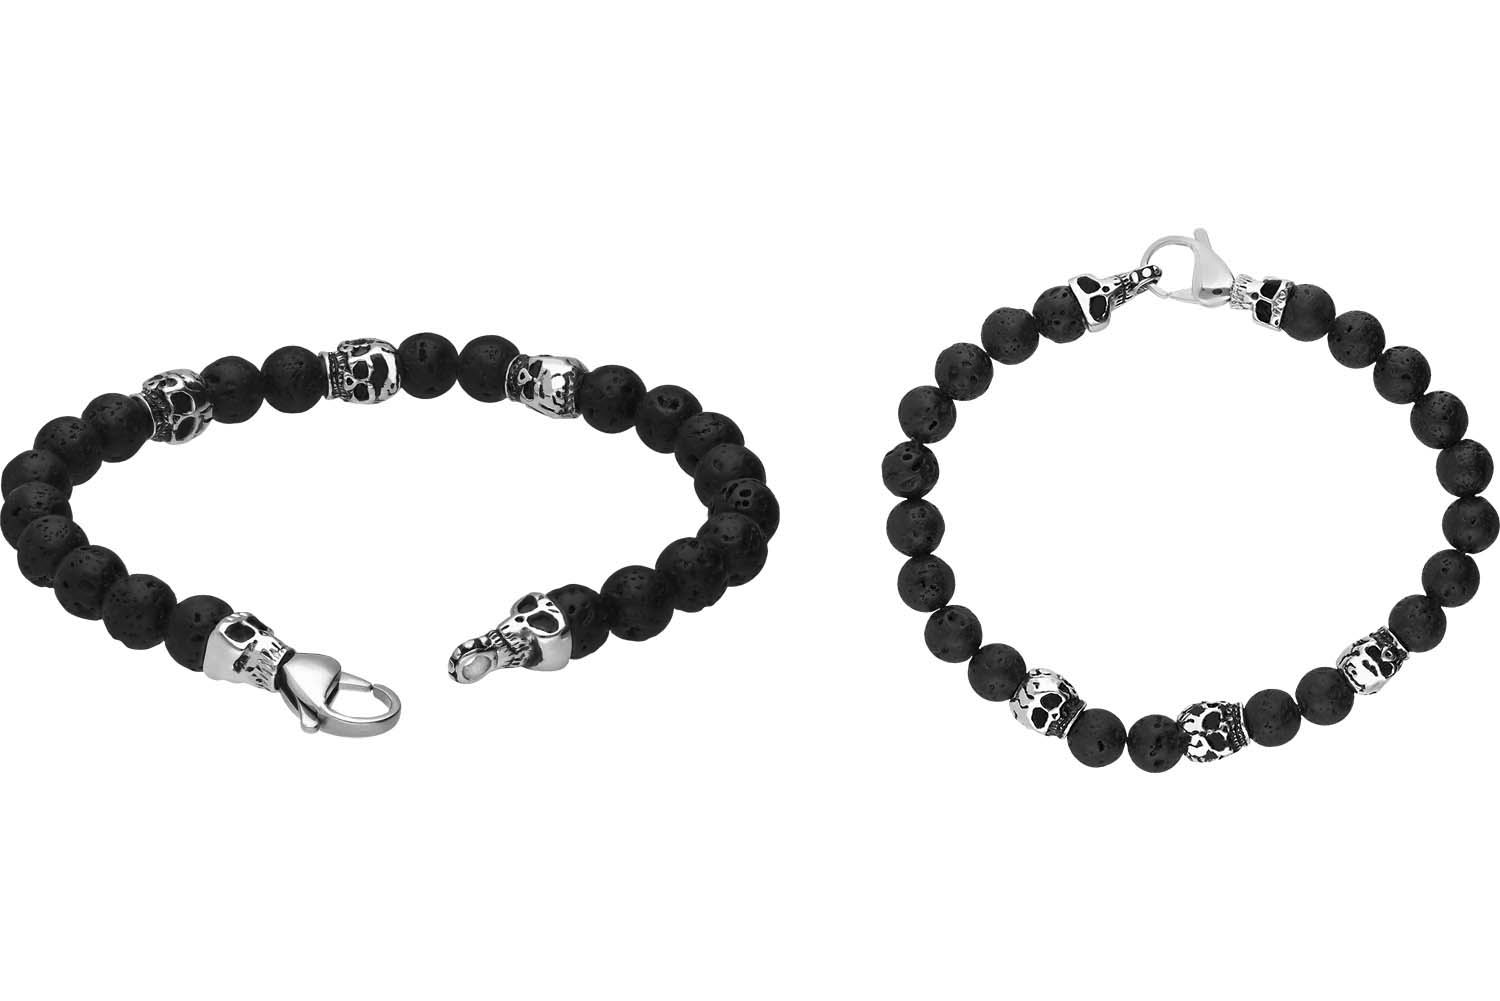 Lava stone ball bracelet SKULLS